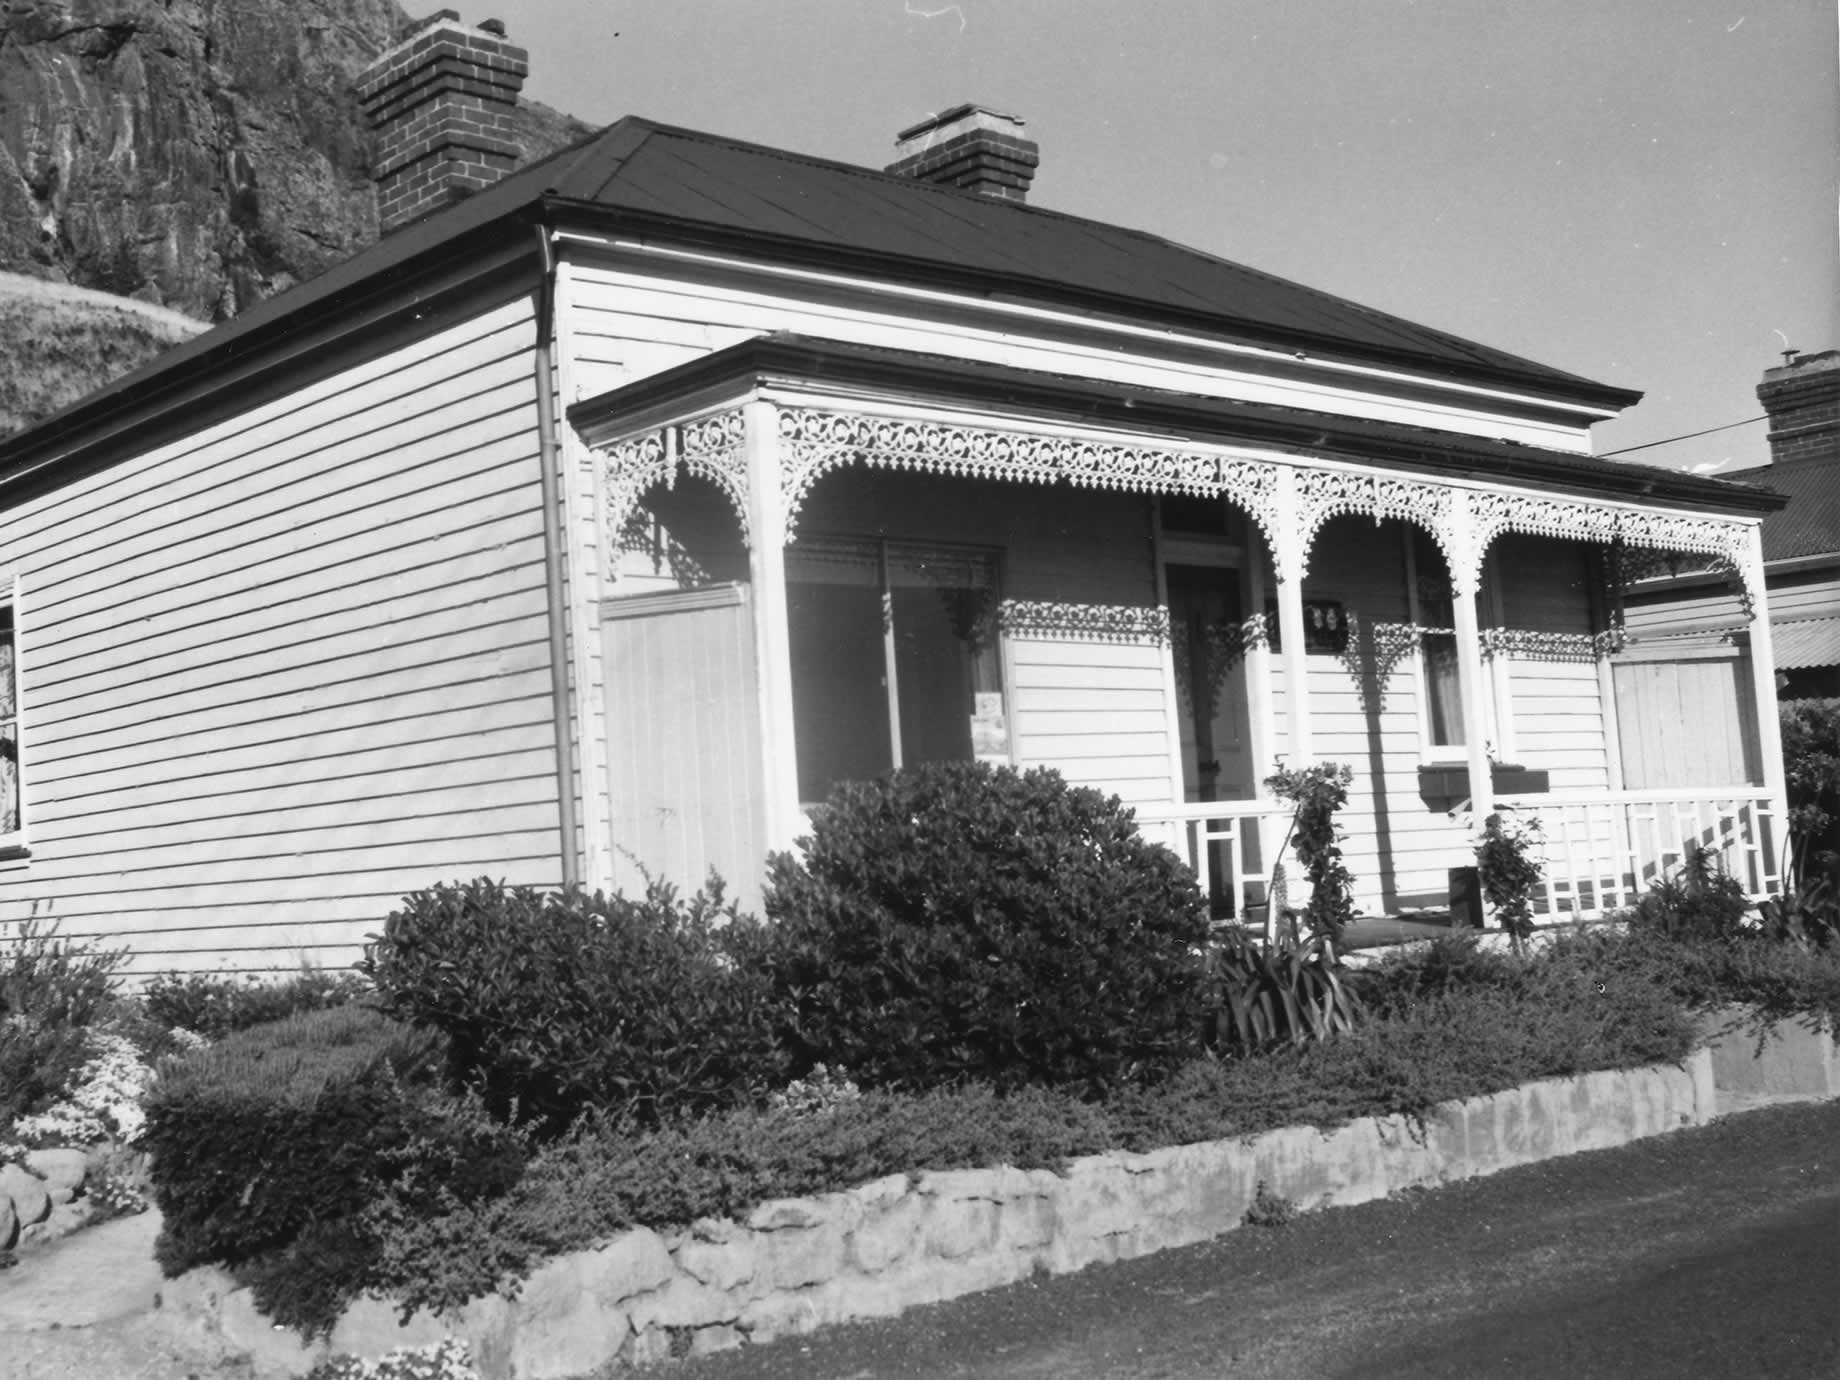 Gull Cottage, 1970, avant de devenir la maison de l'historienne Meg Eldridge